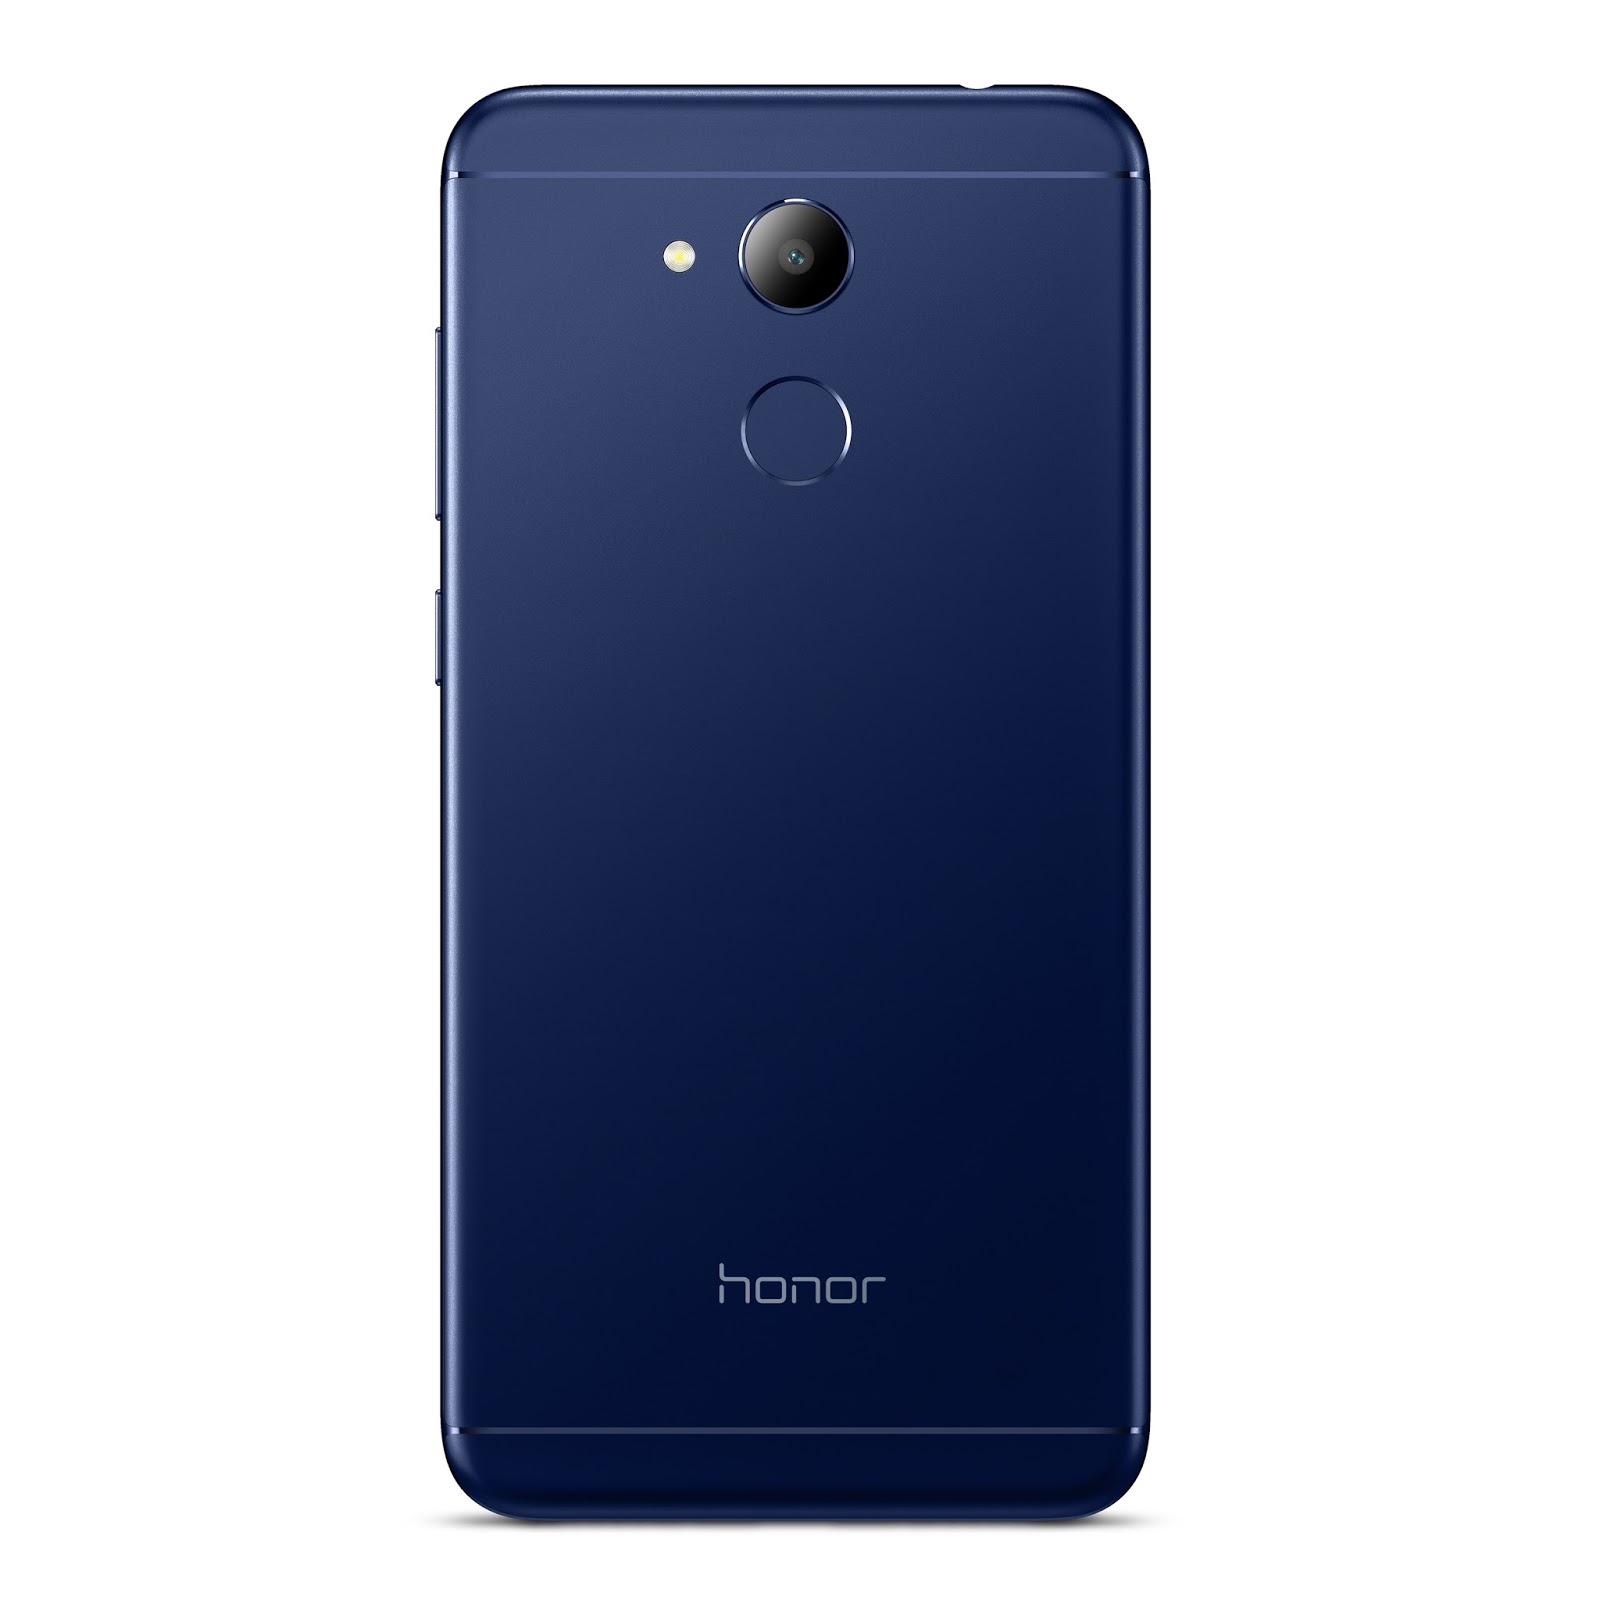 Телефон honor 6c. Huawei Honor 6c Pro. Honor 6c Pro 32gb. Смартфон Honor 6c. Хуавей хонор 6c Pro.